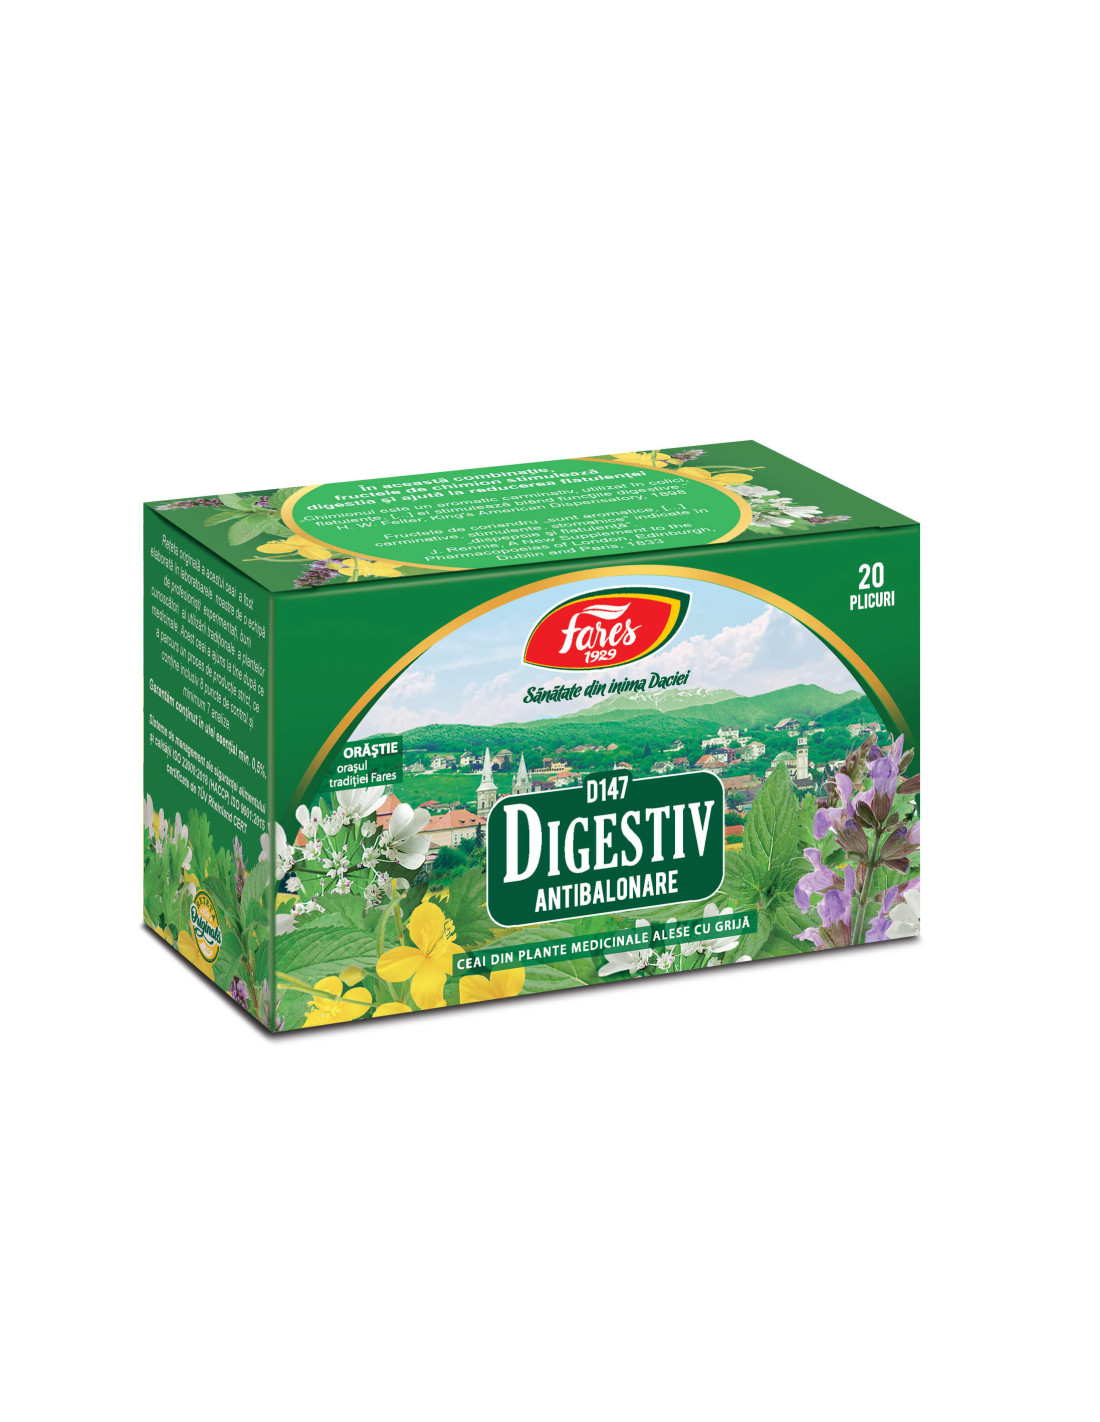 Ceaiuri - Ceai Antibalonare Digestiv 1,5 g,  20 doze, farmacieieftina.ro